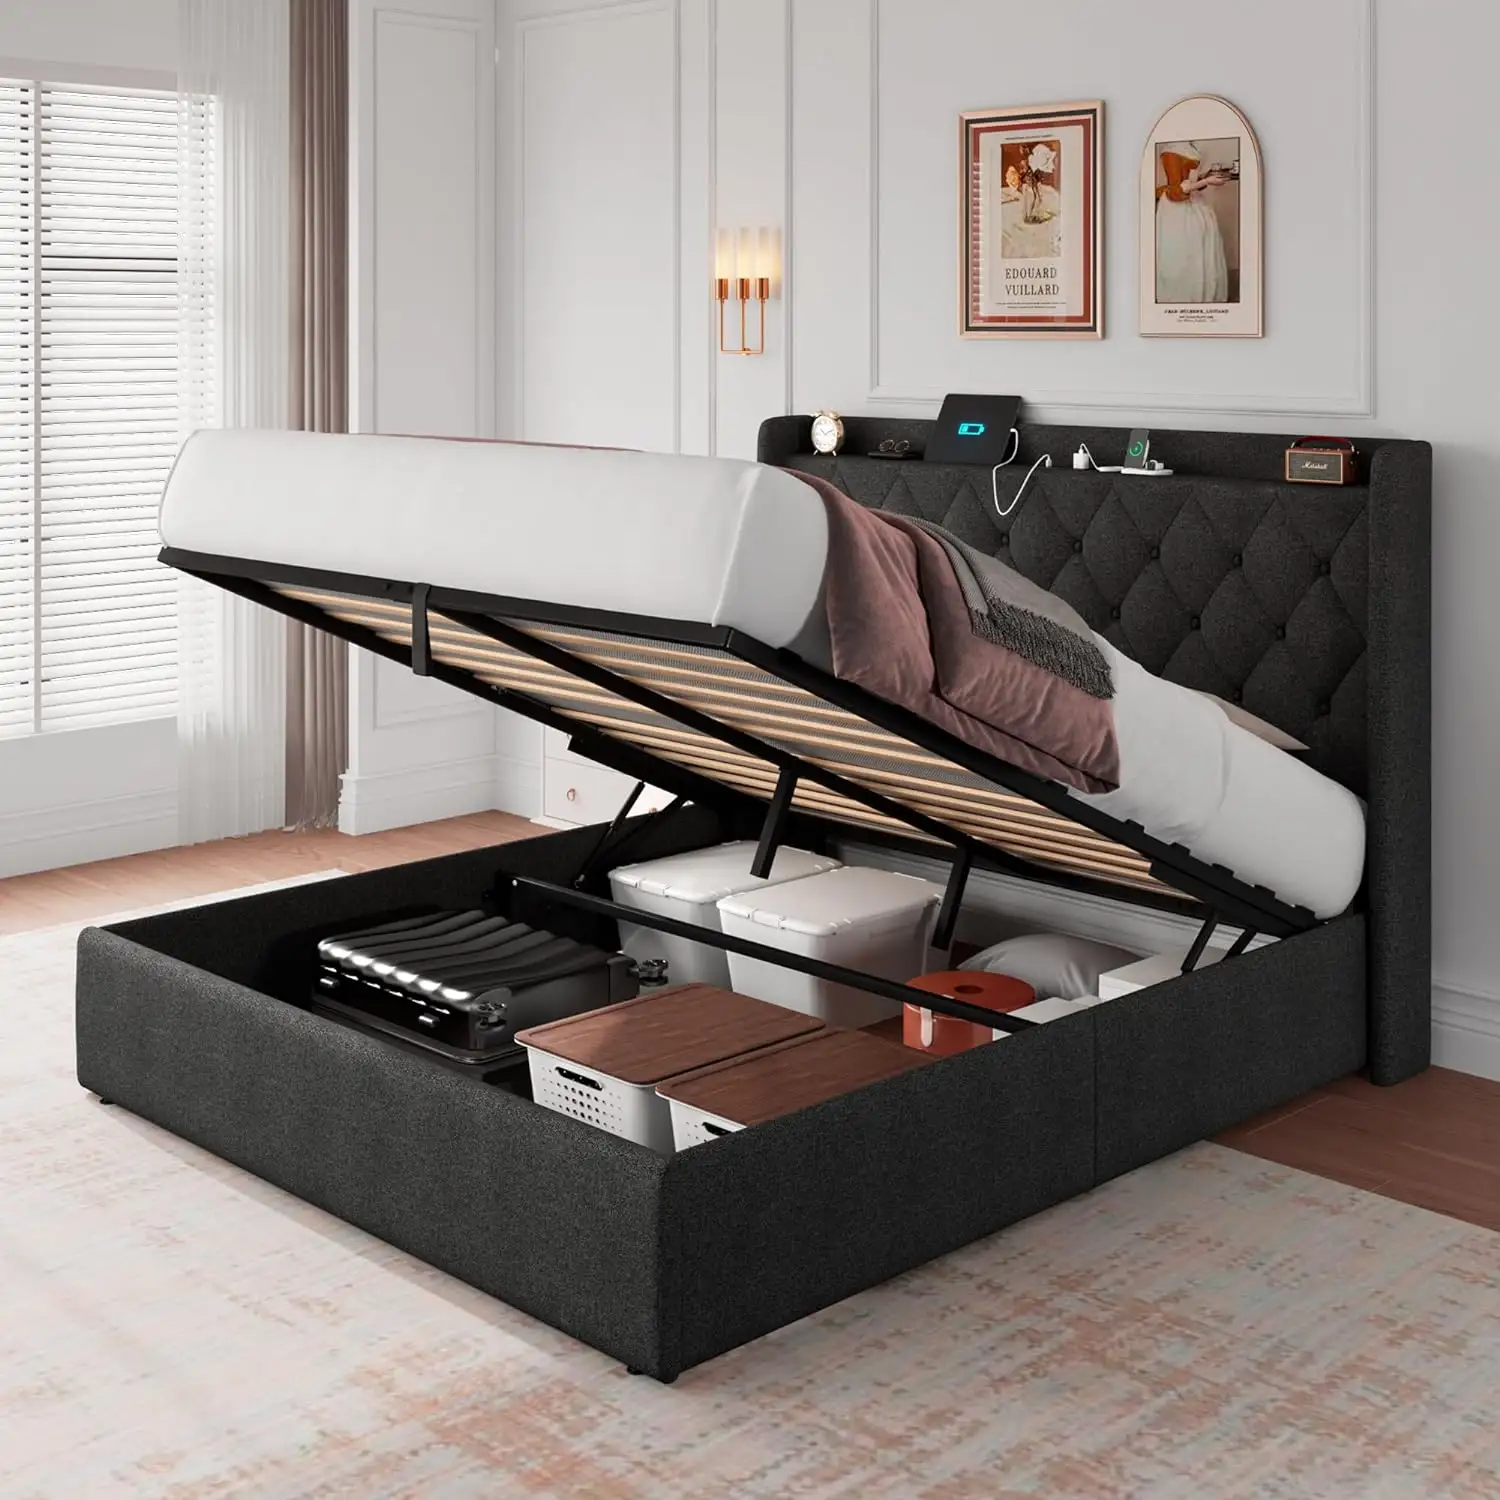 DI DAT आधुनिक डिजाइन शैली किंग साइज लकड़ी का बेड फ्रेम बेडरूम के लिए USB पोर्ट और सॉकेट, अंडरबेड स्टोरेज, RGB एलईडी लाइटिंग